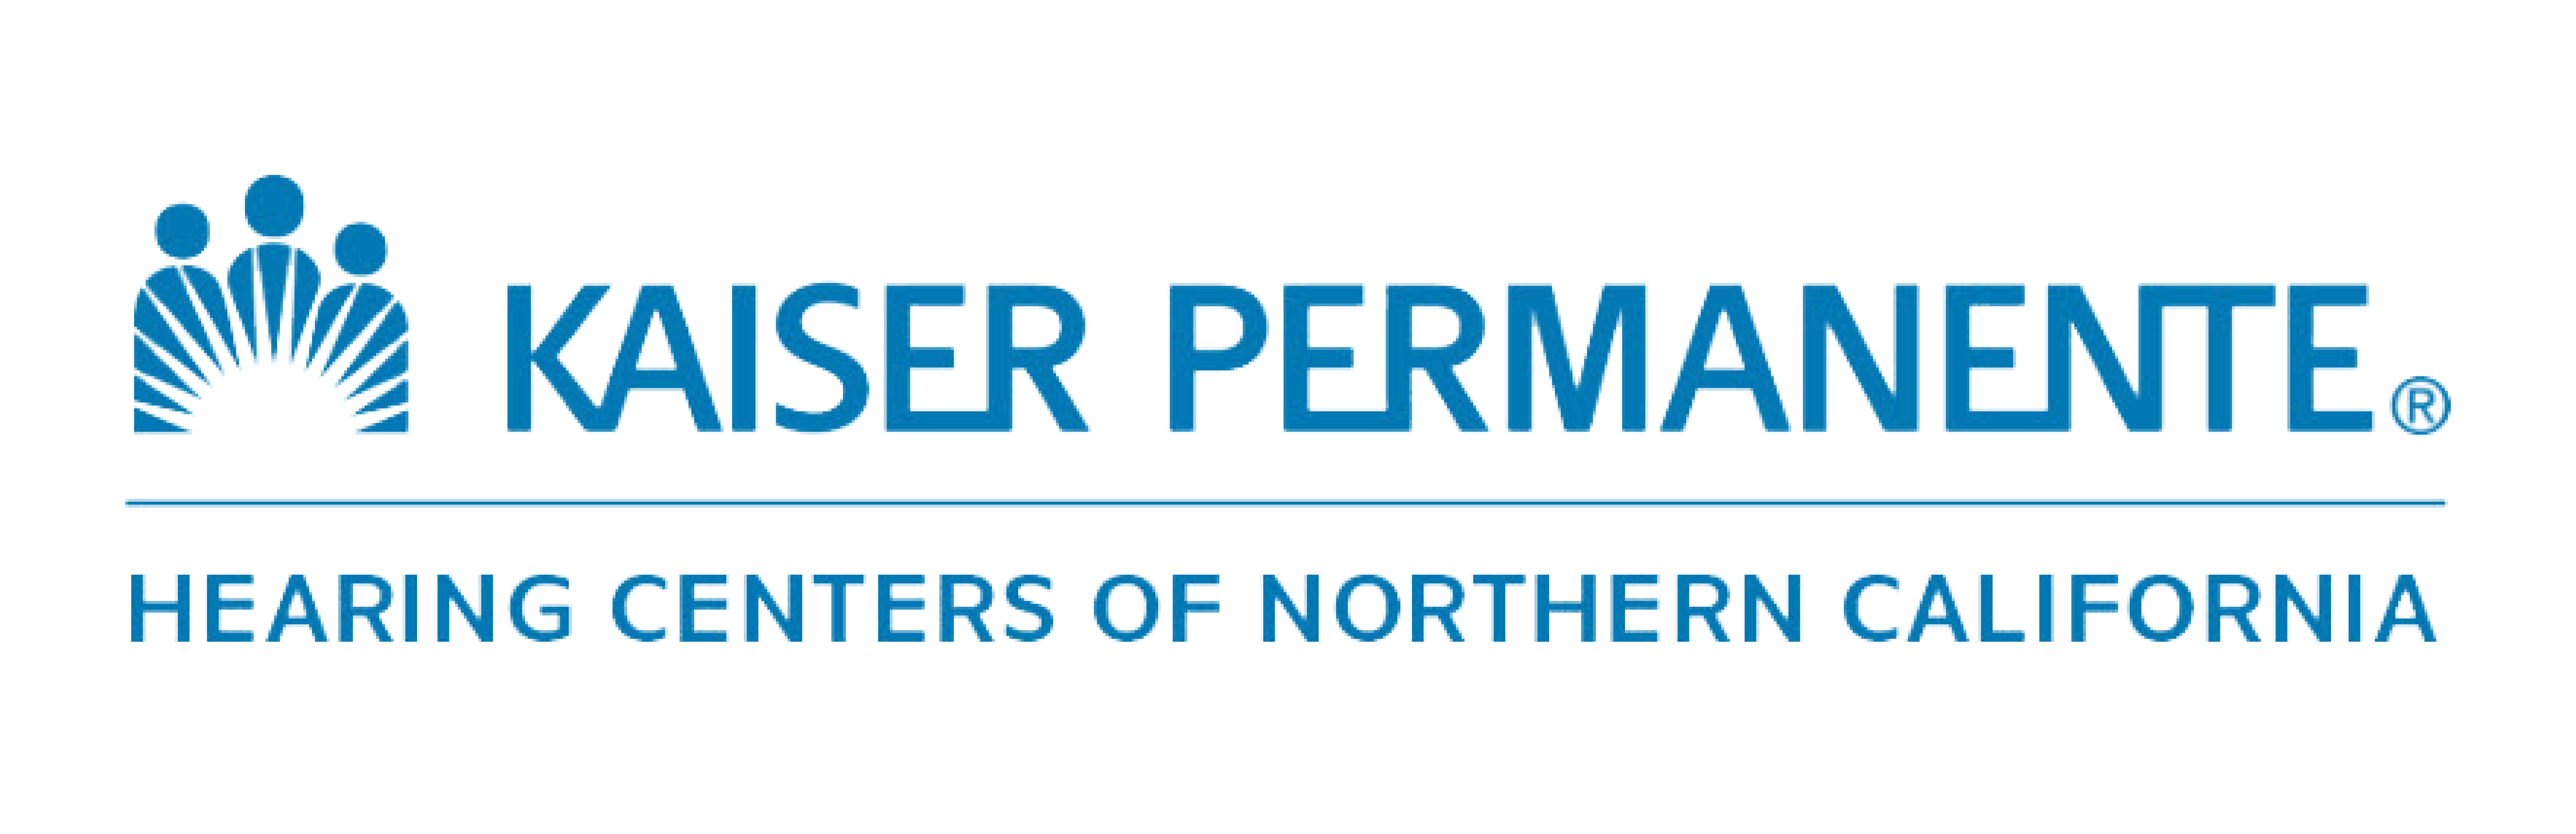 Kaoser Permanente logo